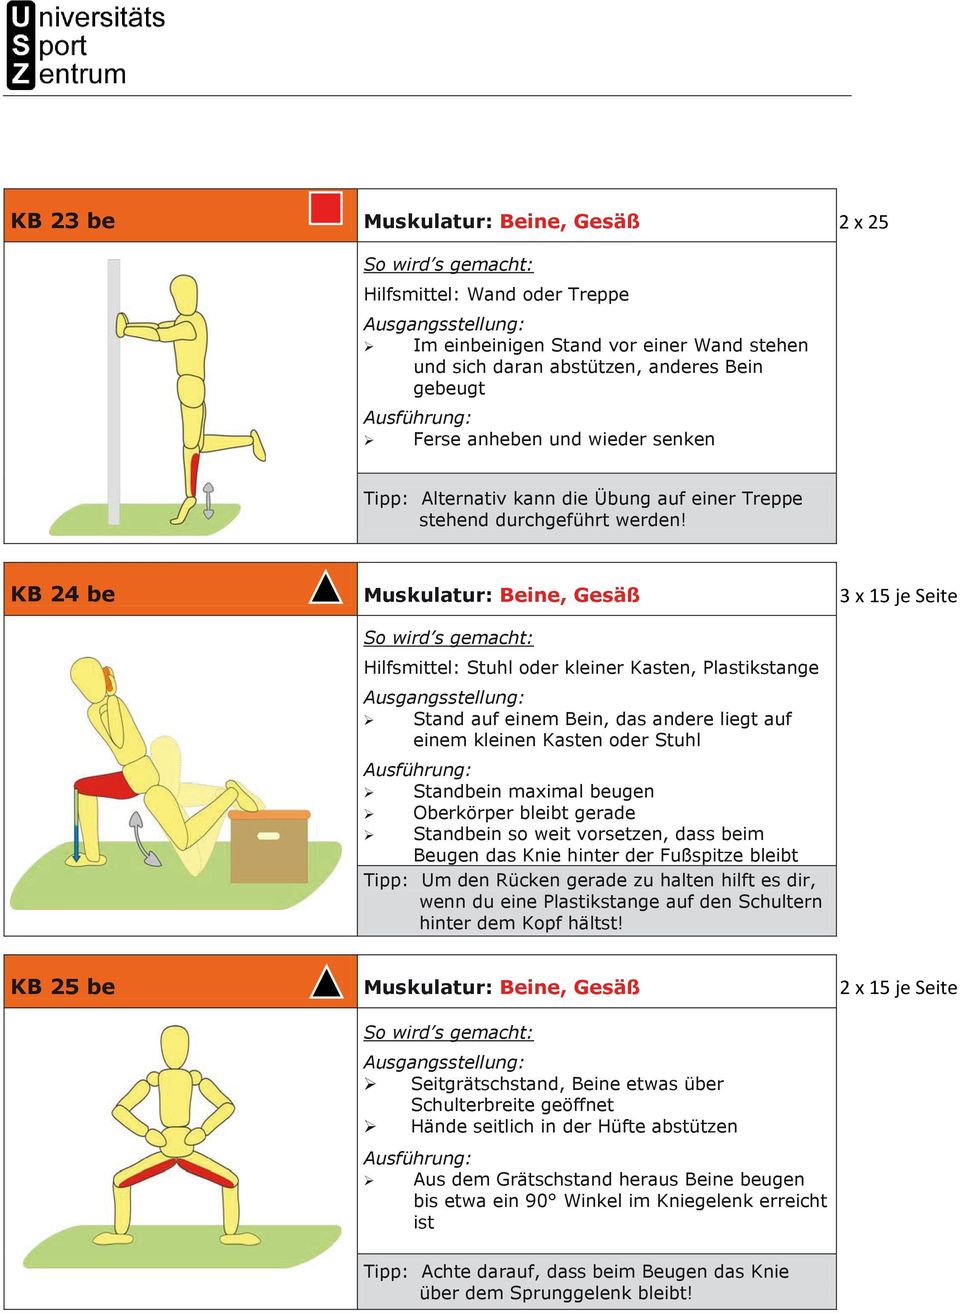 .. Muskulatur: Beine, Gesäß Hilfsmittel: Stuhl oder kleiner Kasten, Plastikstange Stand auf einem Bein, das andere liegt auf einem kleinen Kasten oder Stuhl Standbein maximal beugen Oberkörper bleibt